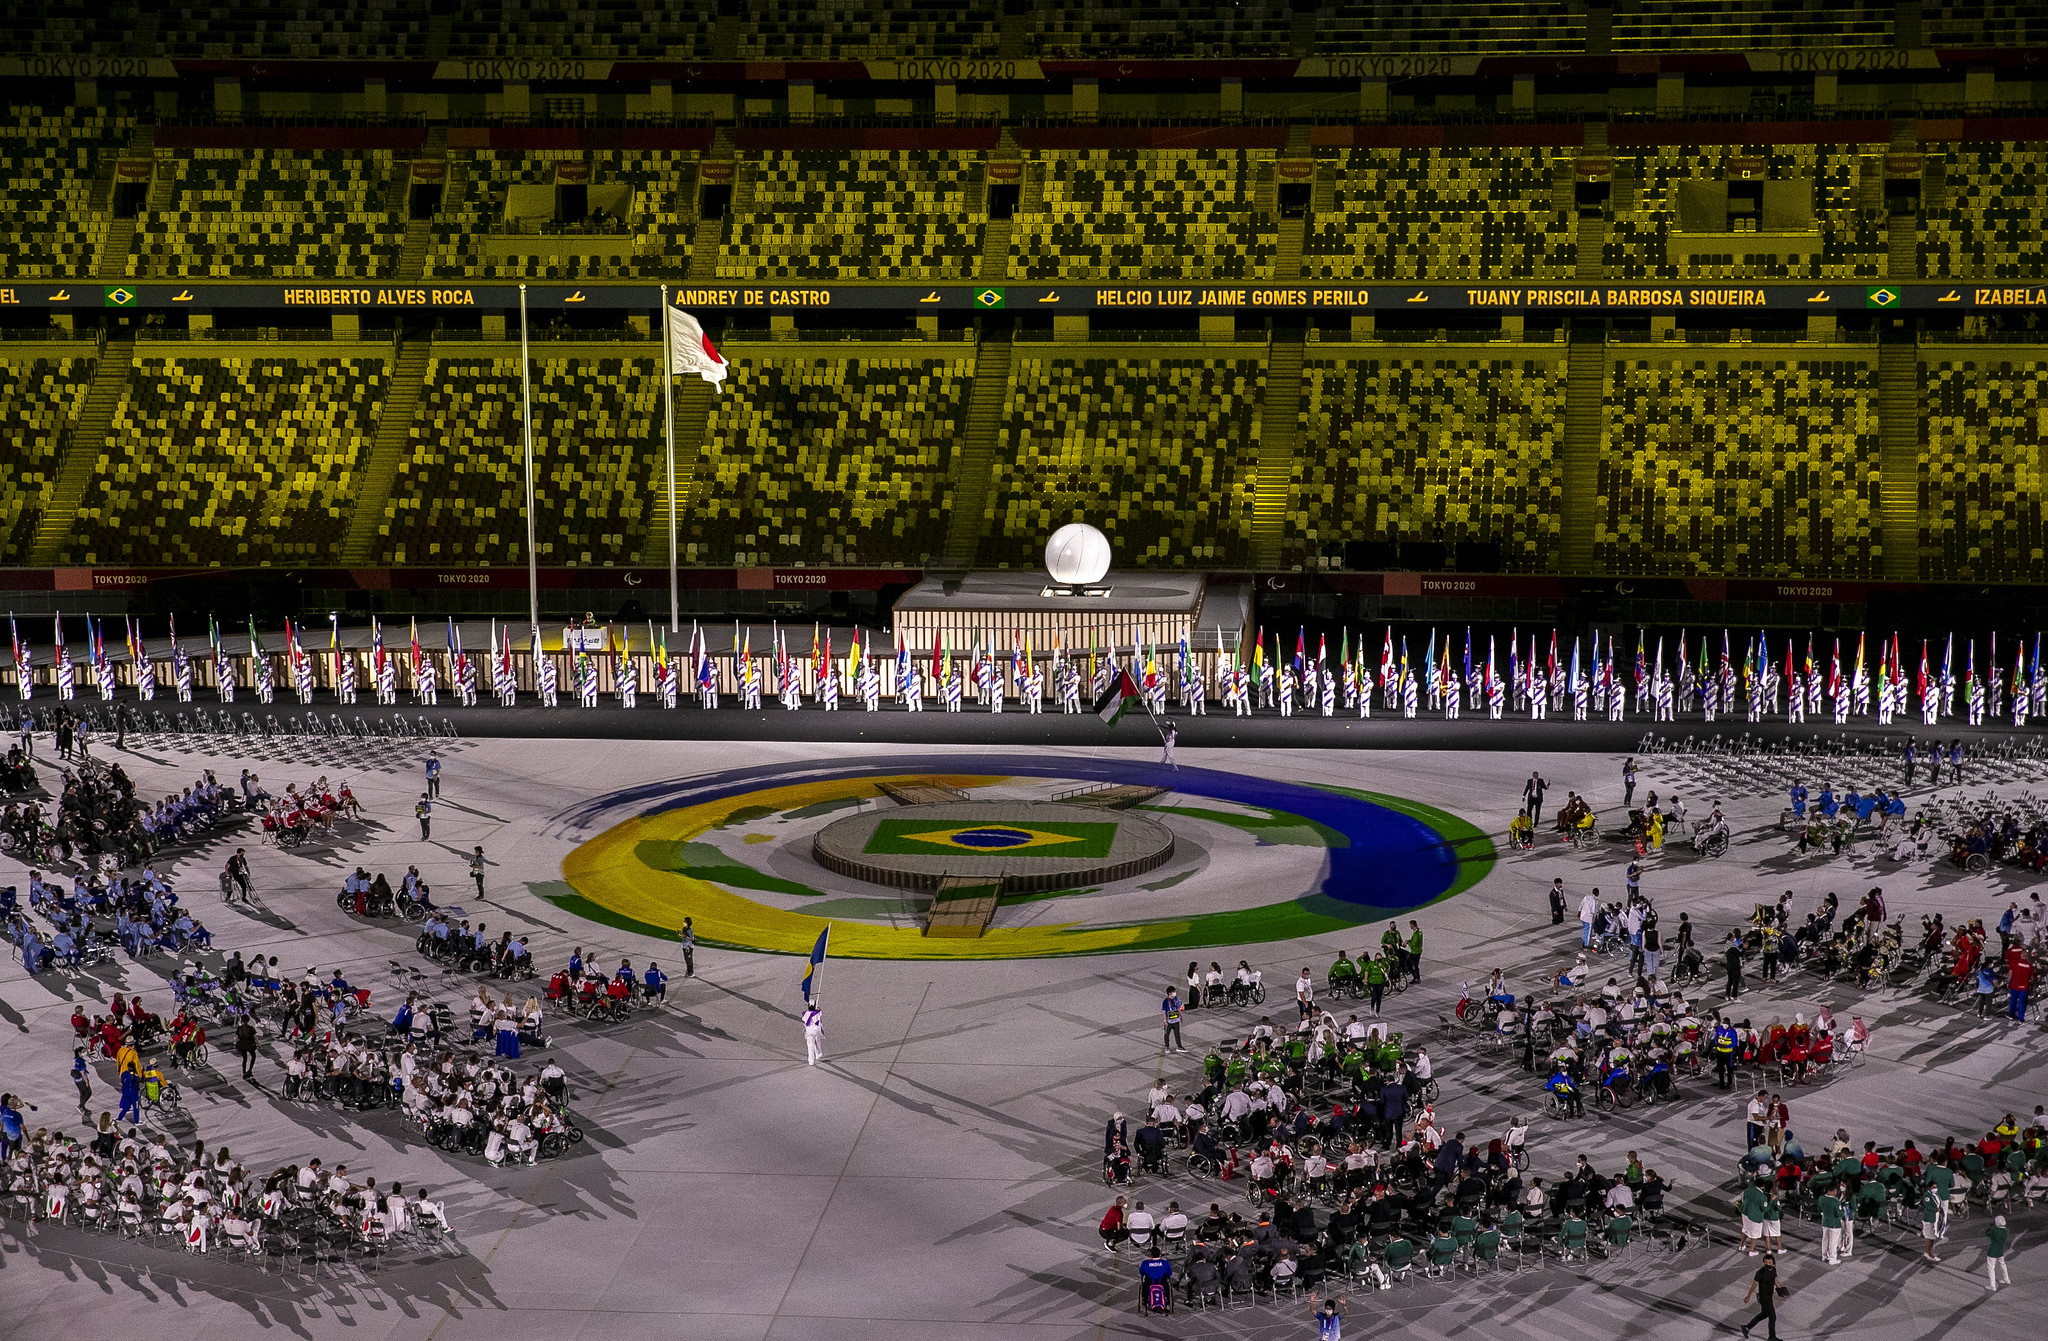 A foto foi feita em uma parte da cerimônia de abertura dos Jogos Paralímpicos de Tóquio. Há um tablado central no estádio com a bandeira e as cores do Brasil. Diversos atletas paralímpicos aparecem distribuídos no local.